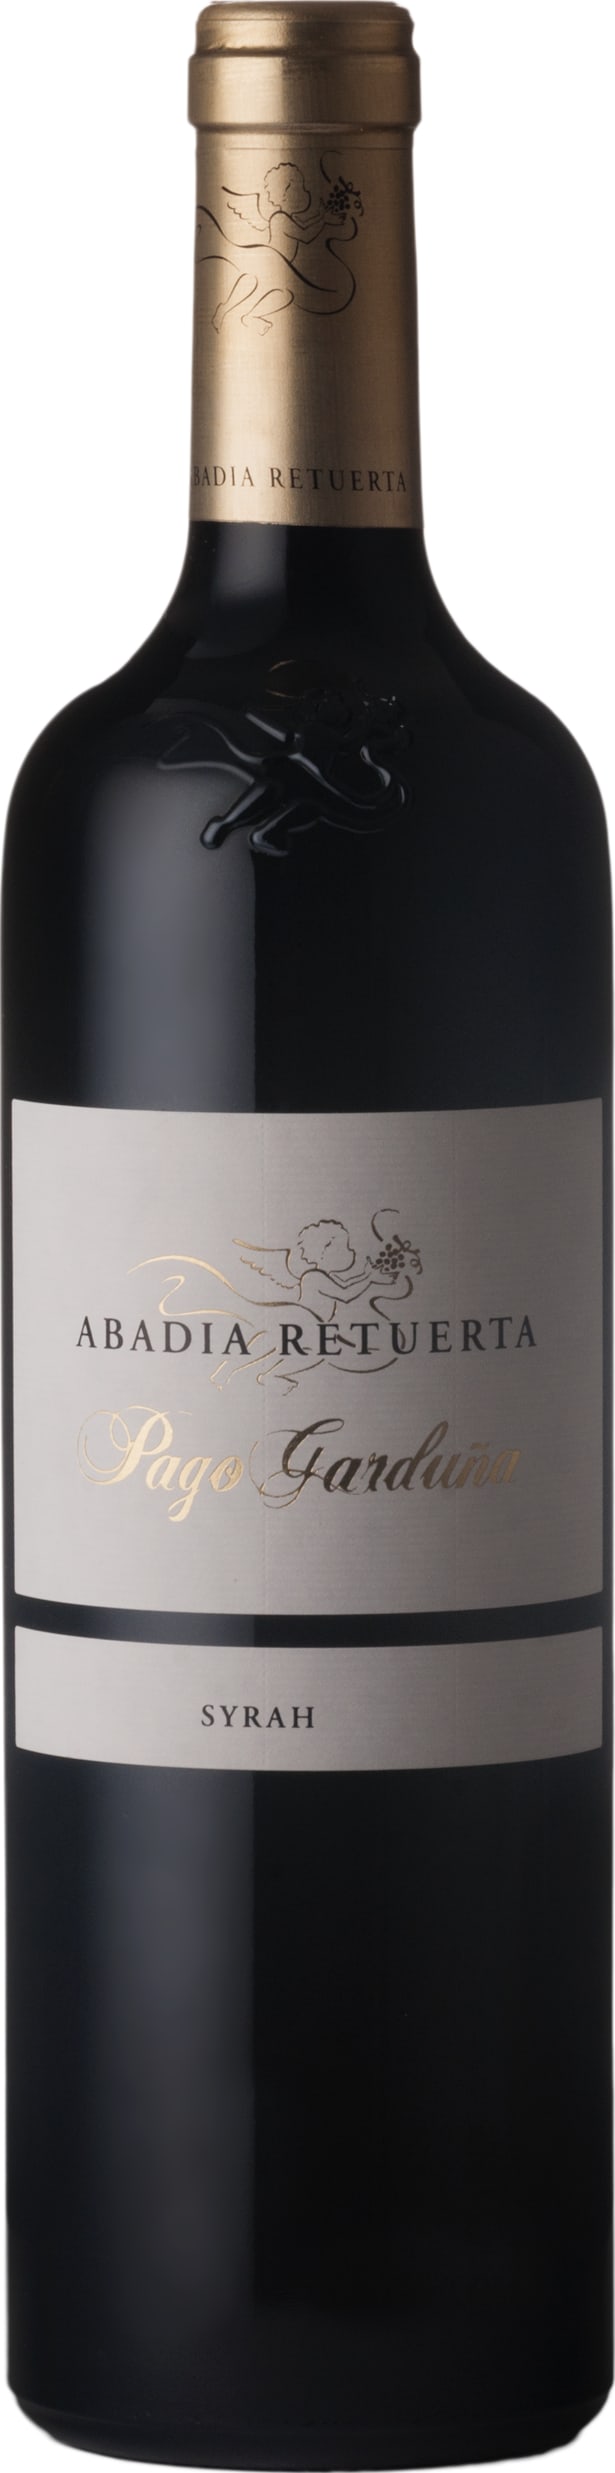 Abadia Retuerta Pago Garduna Syrah 2018 75cl - Buy Abadia Retuerta Wines from GREAT WINES DIRECT wine shop